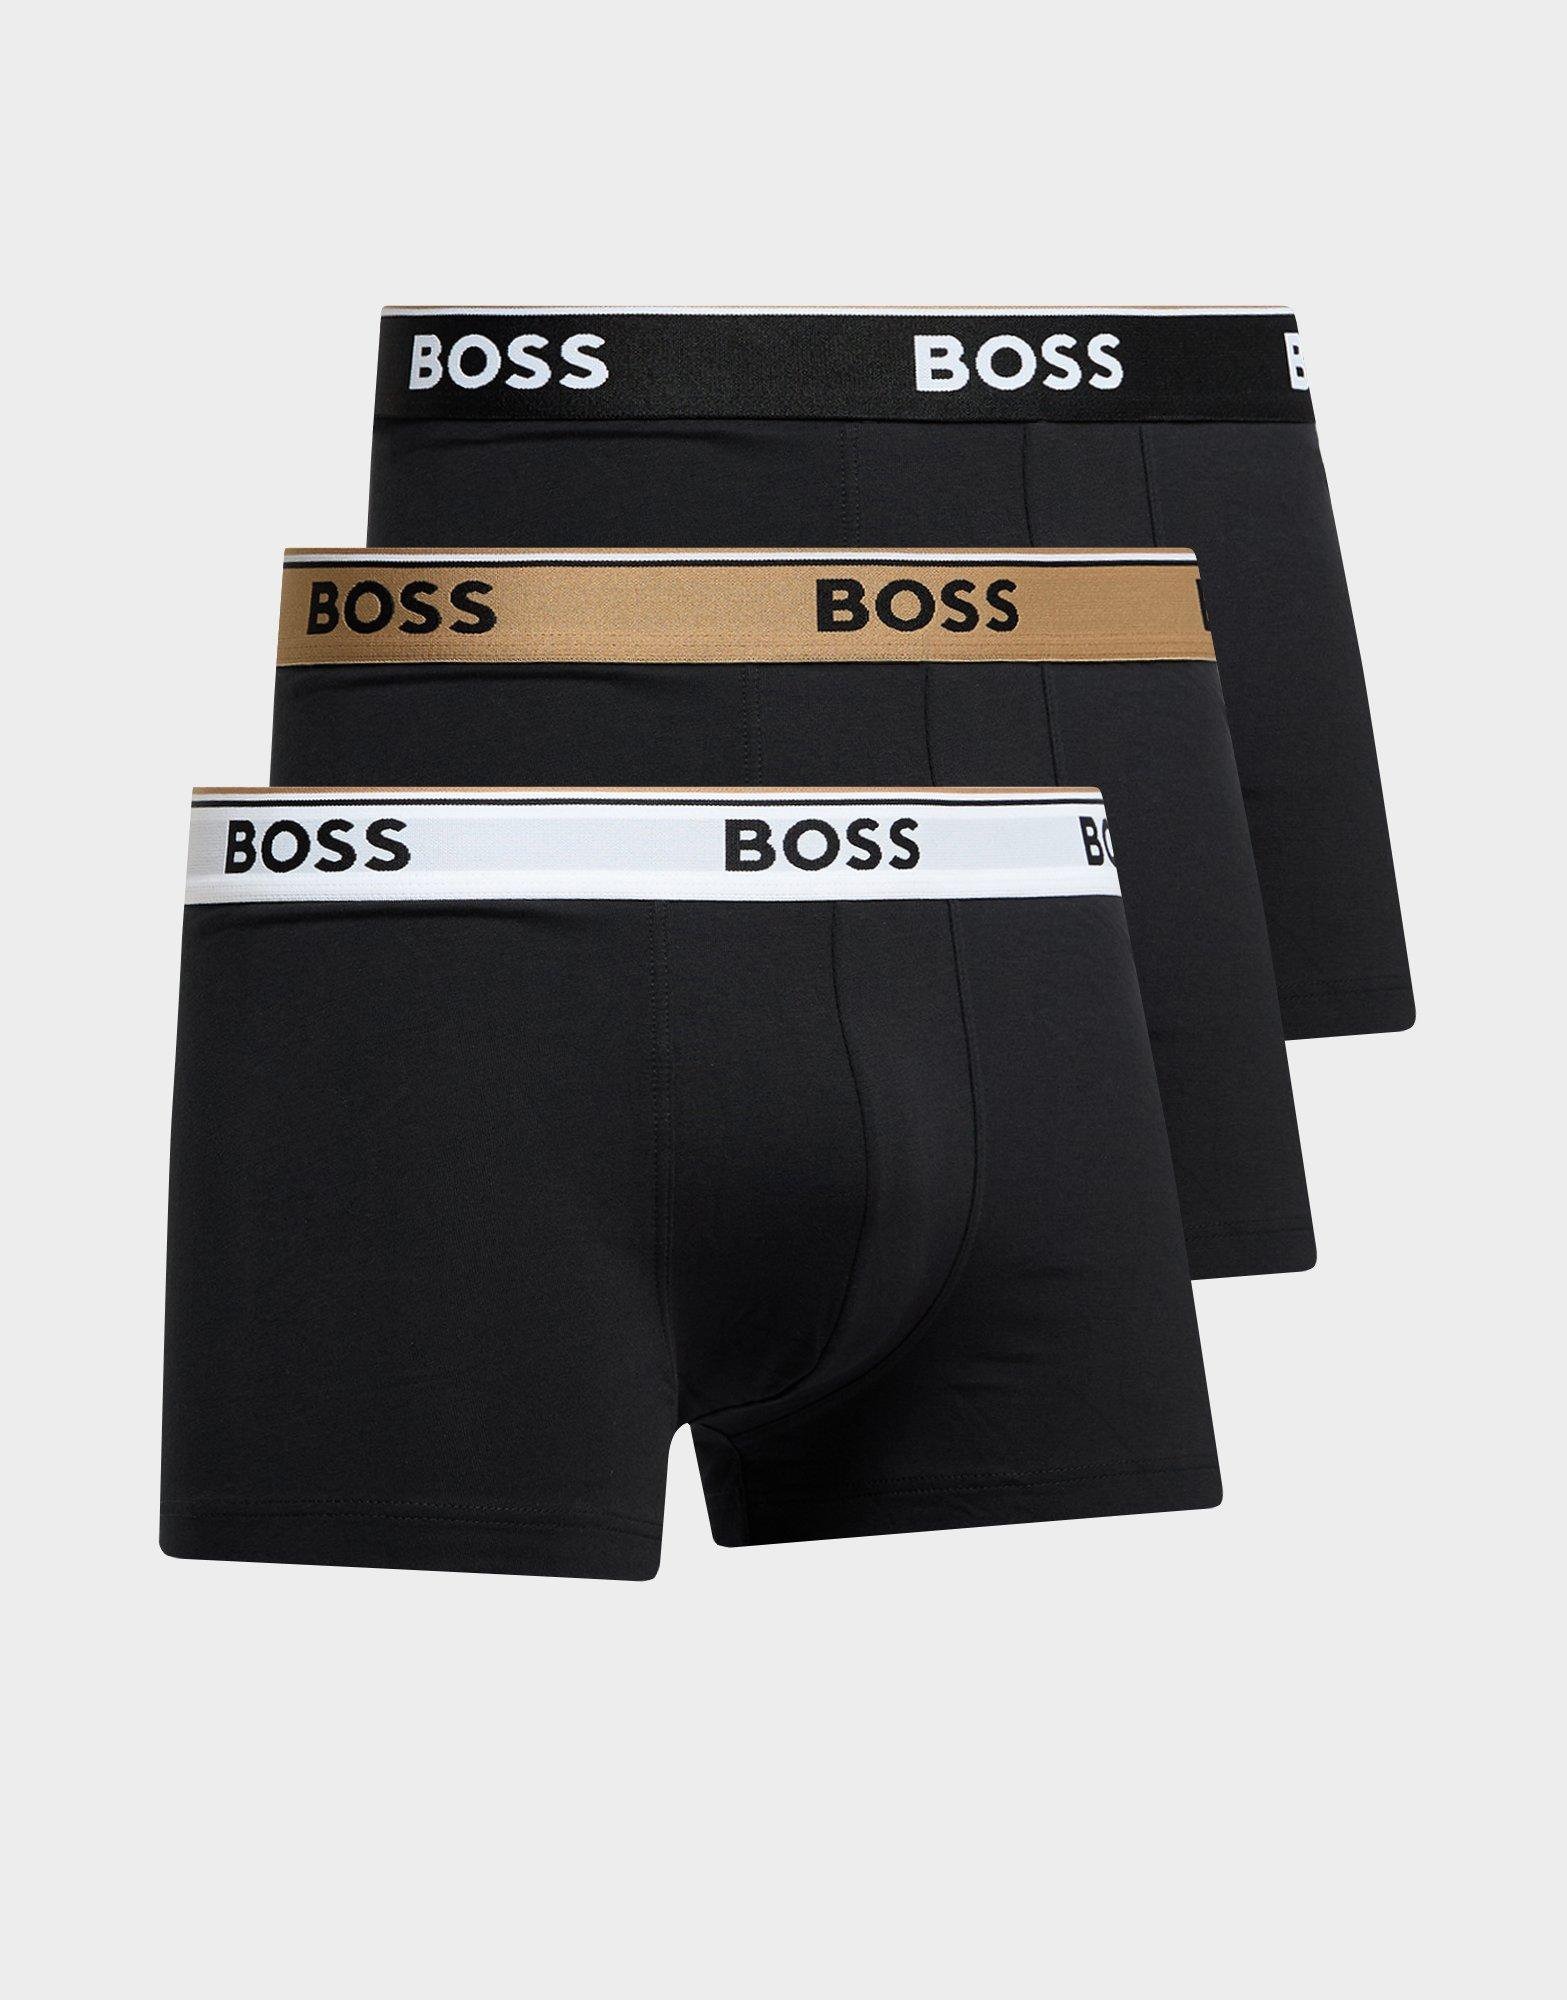 Black BOSS 3-Pack Trunks | JD Sports UK